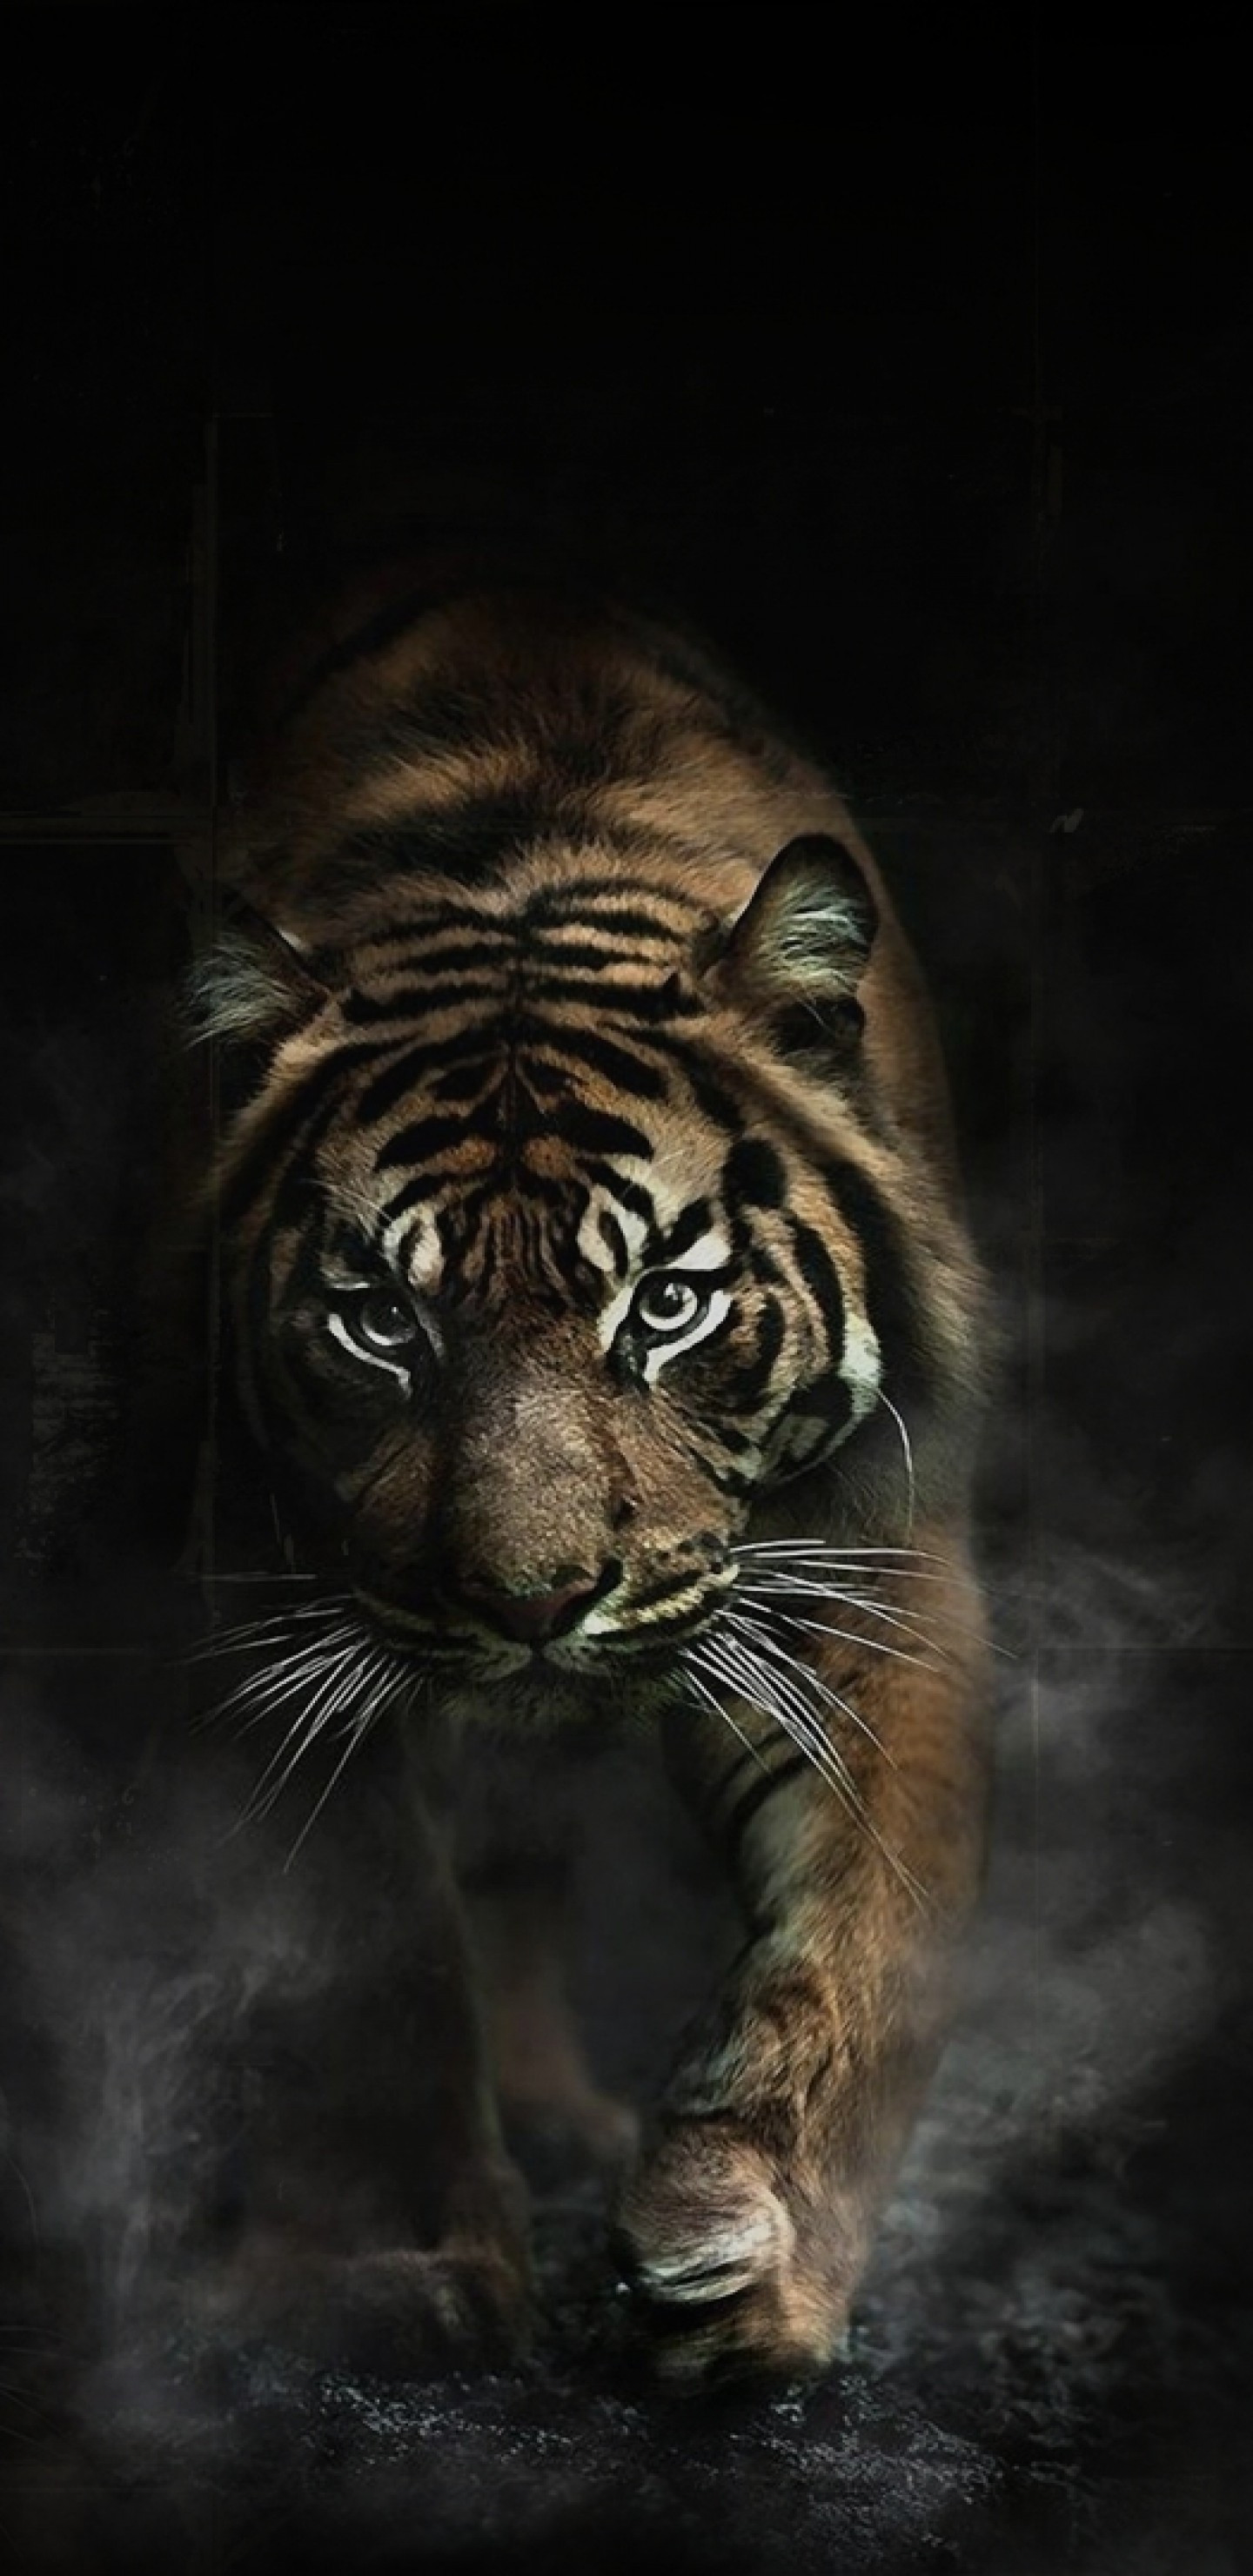 Tiger Big Cats Predator Wallpaper For